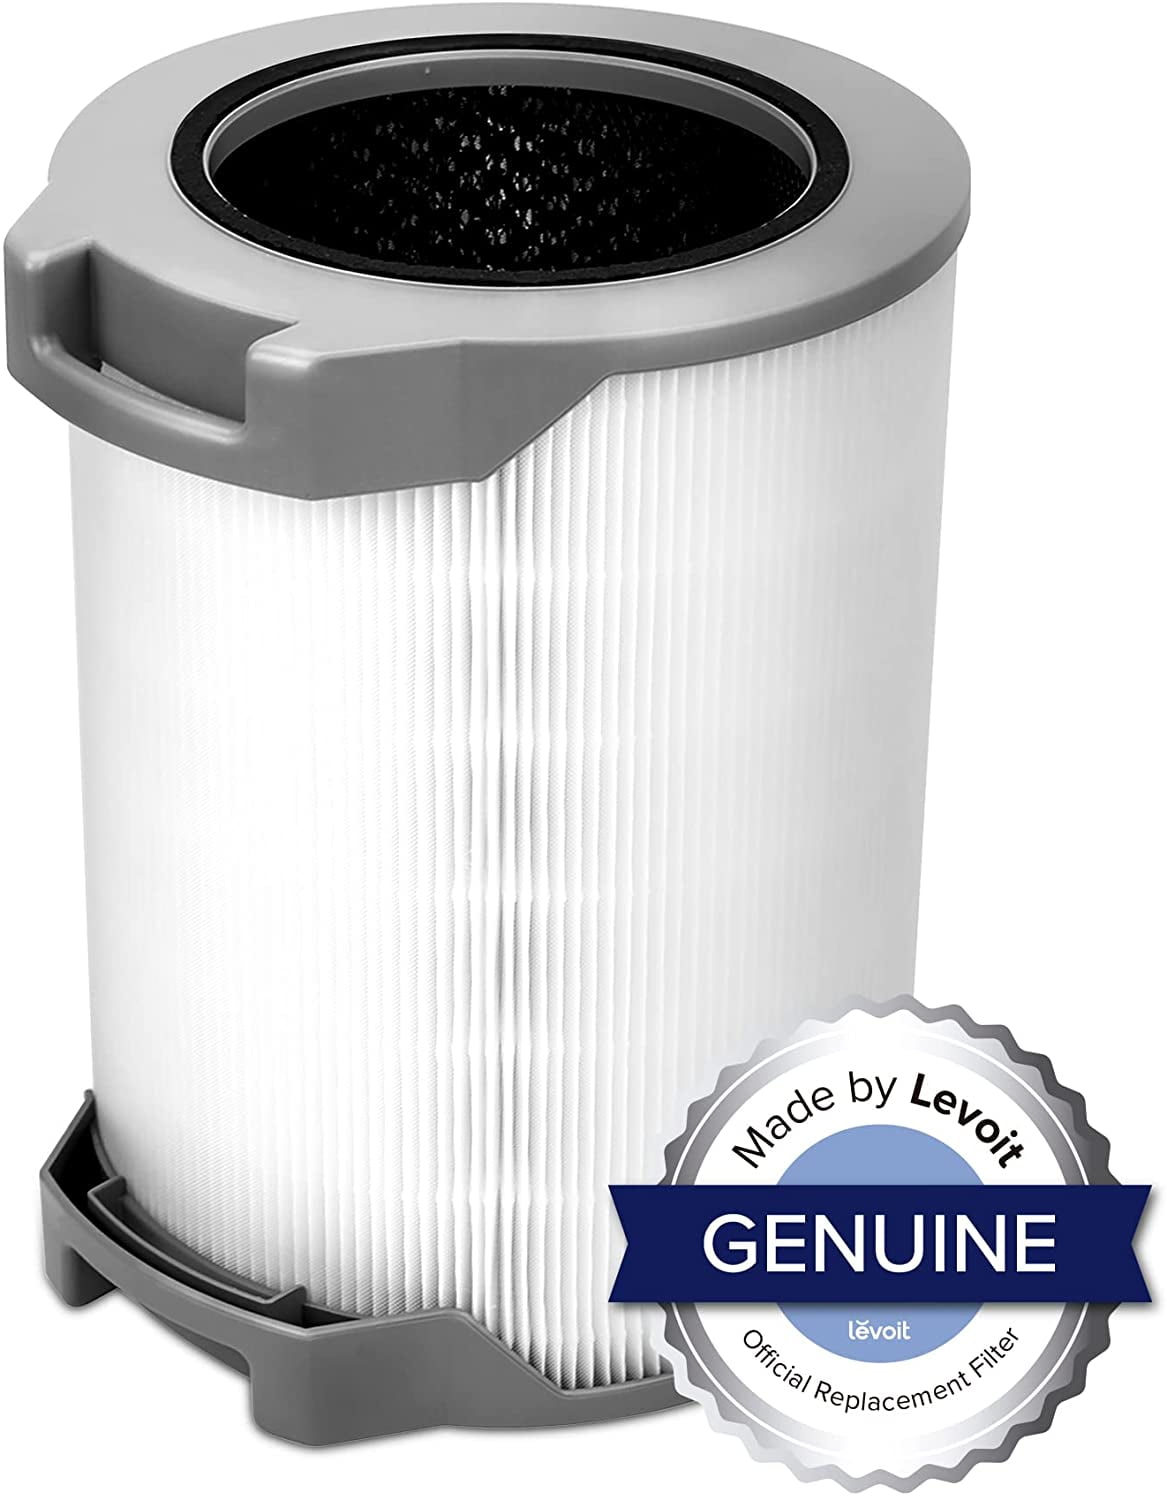 Levoit Smart Air Purifier Lv-rh131s-wm, HEPA for Smoke & Odors, Bonus Filter, Energy Star